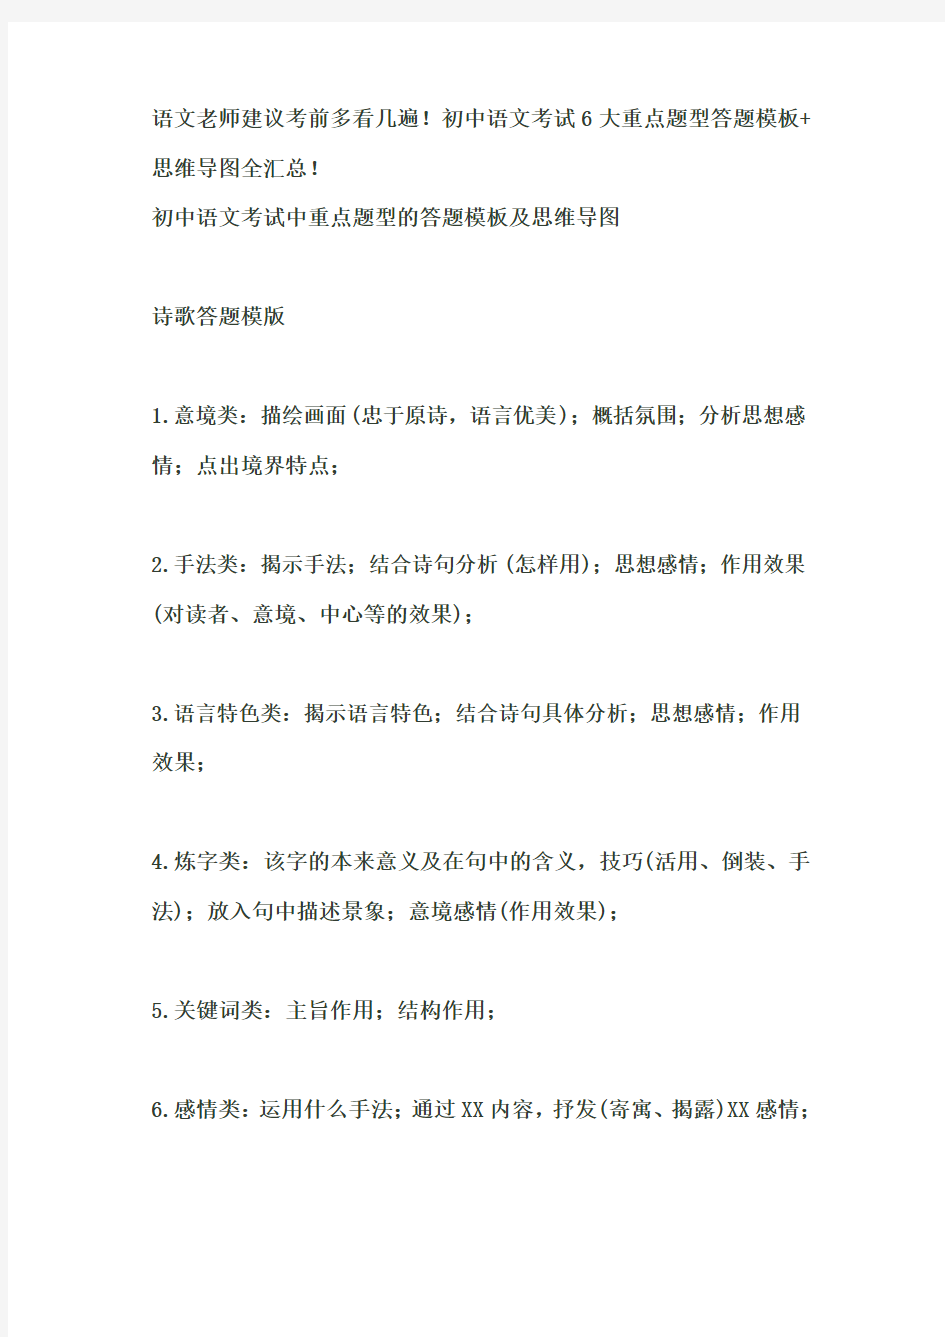 初中语文考试6大重点题型答题模板+思维导图全汇总!